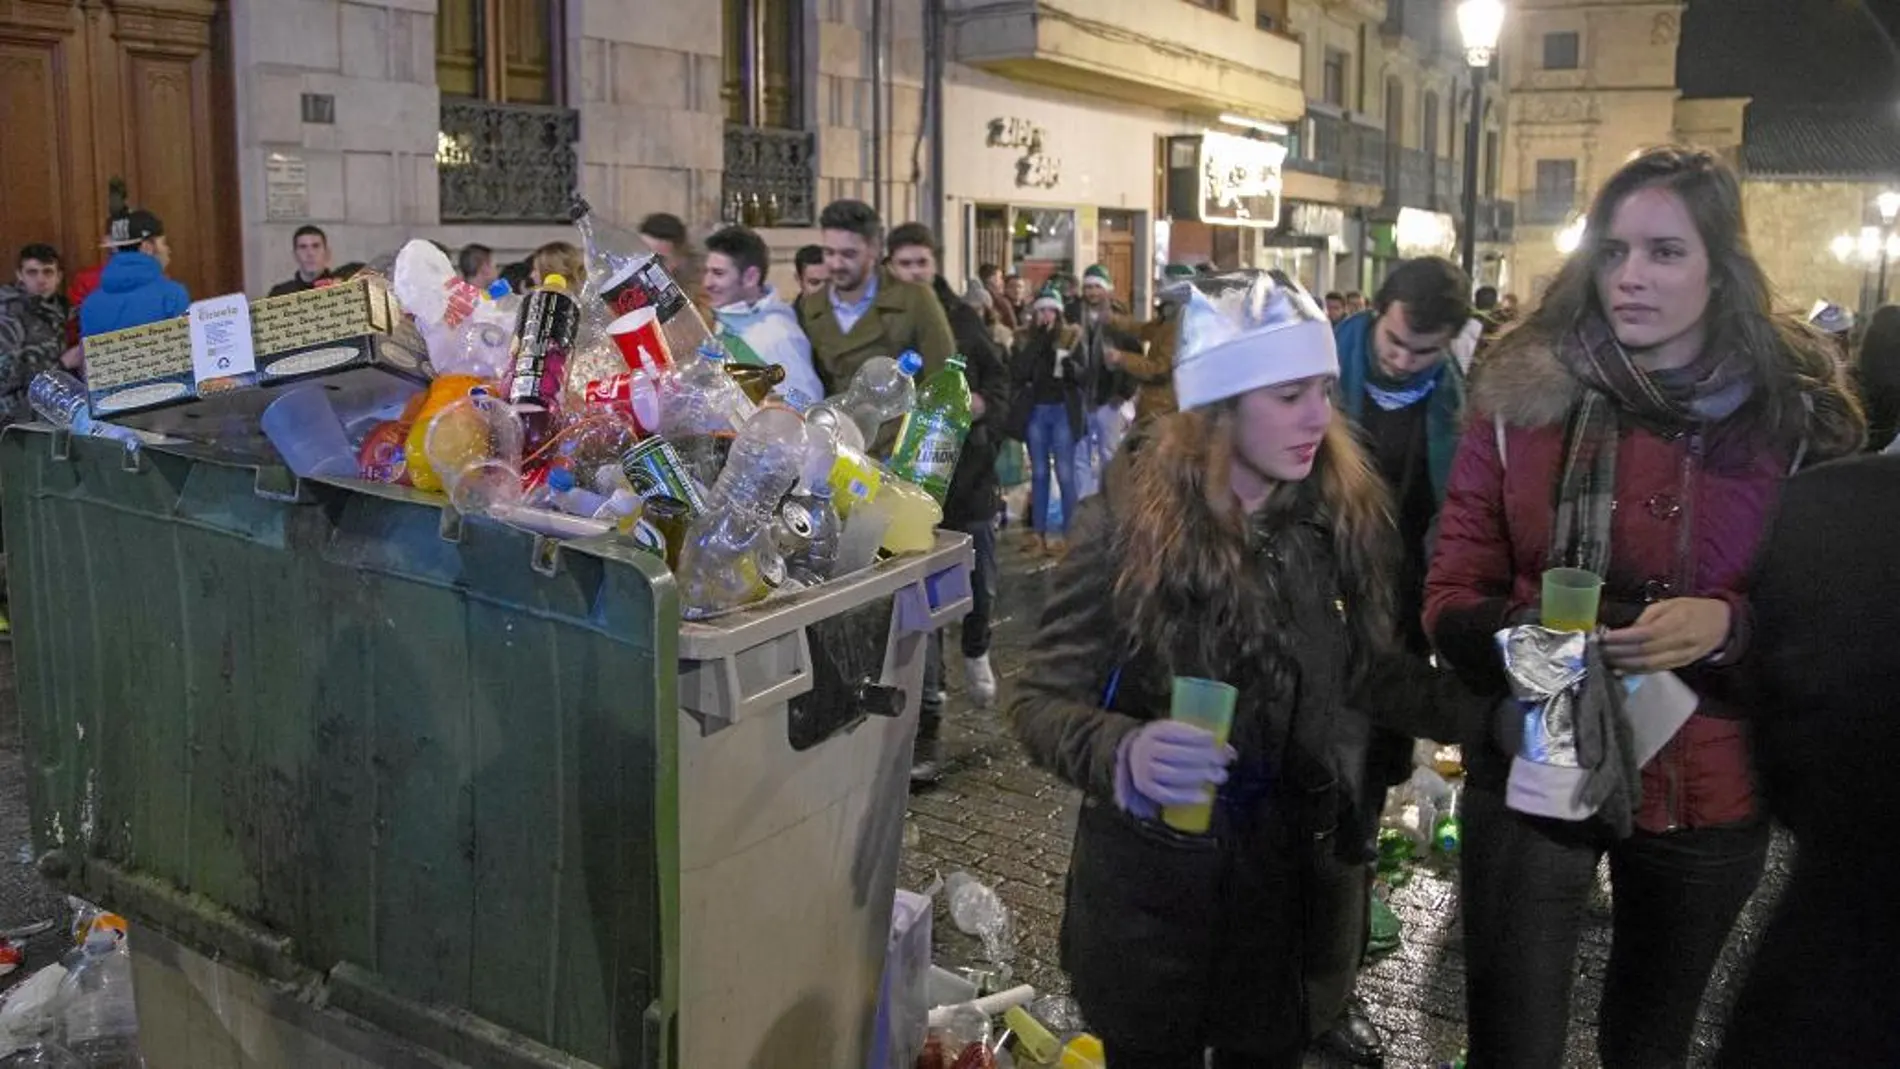 Jóvenes disfrutando de la Nochevieja universitaria que se celebra en Salamanca en diciembre y que congrega a miles de estudiantes procedentes de toda España